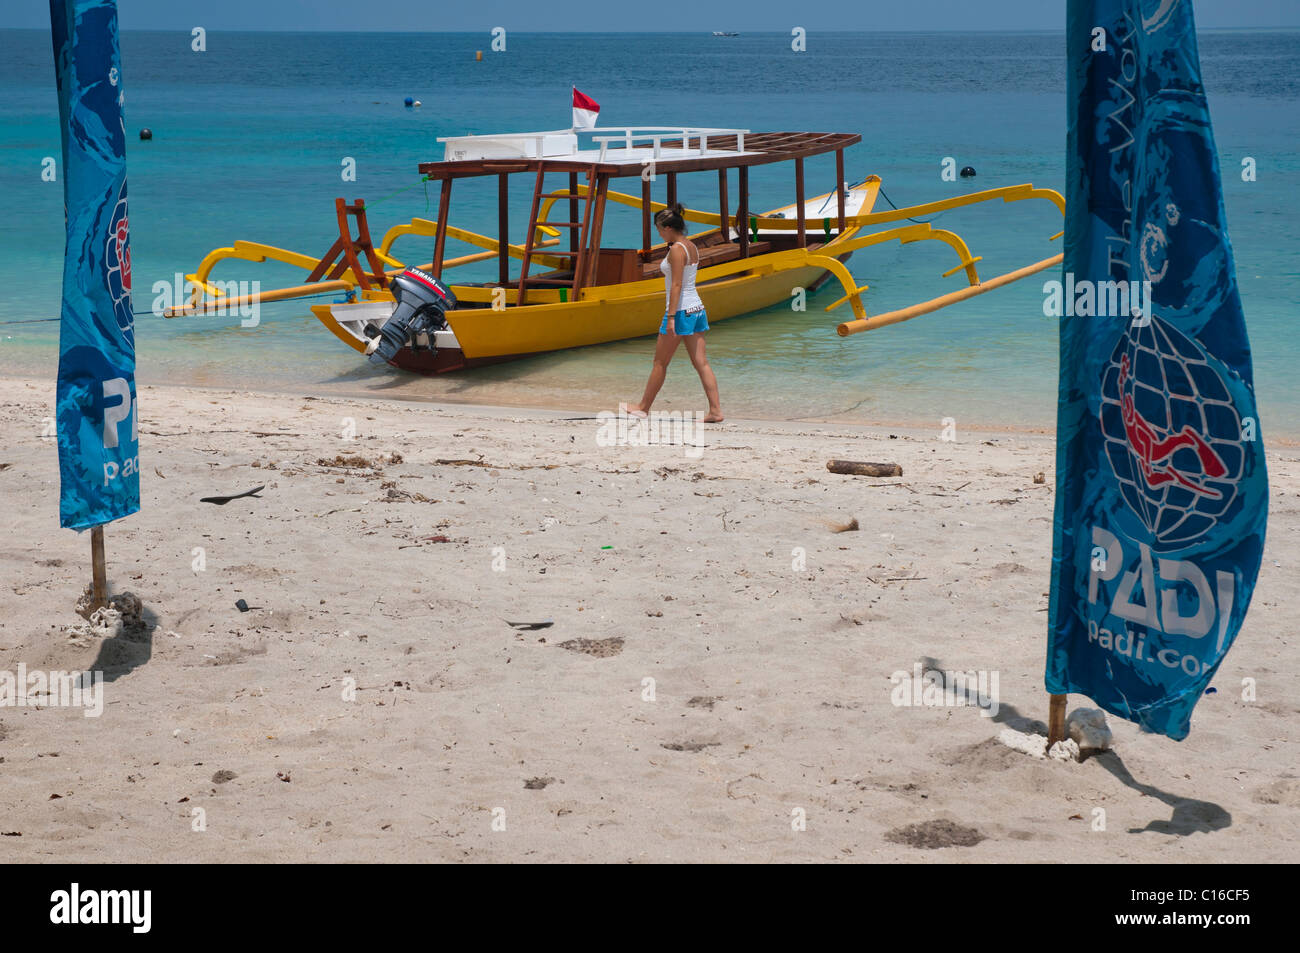 PADI Dive Boot verankert am Strand von Gili Trawangan, eine kleine Insel vor Lombok Indonesien Stockfoto